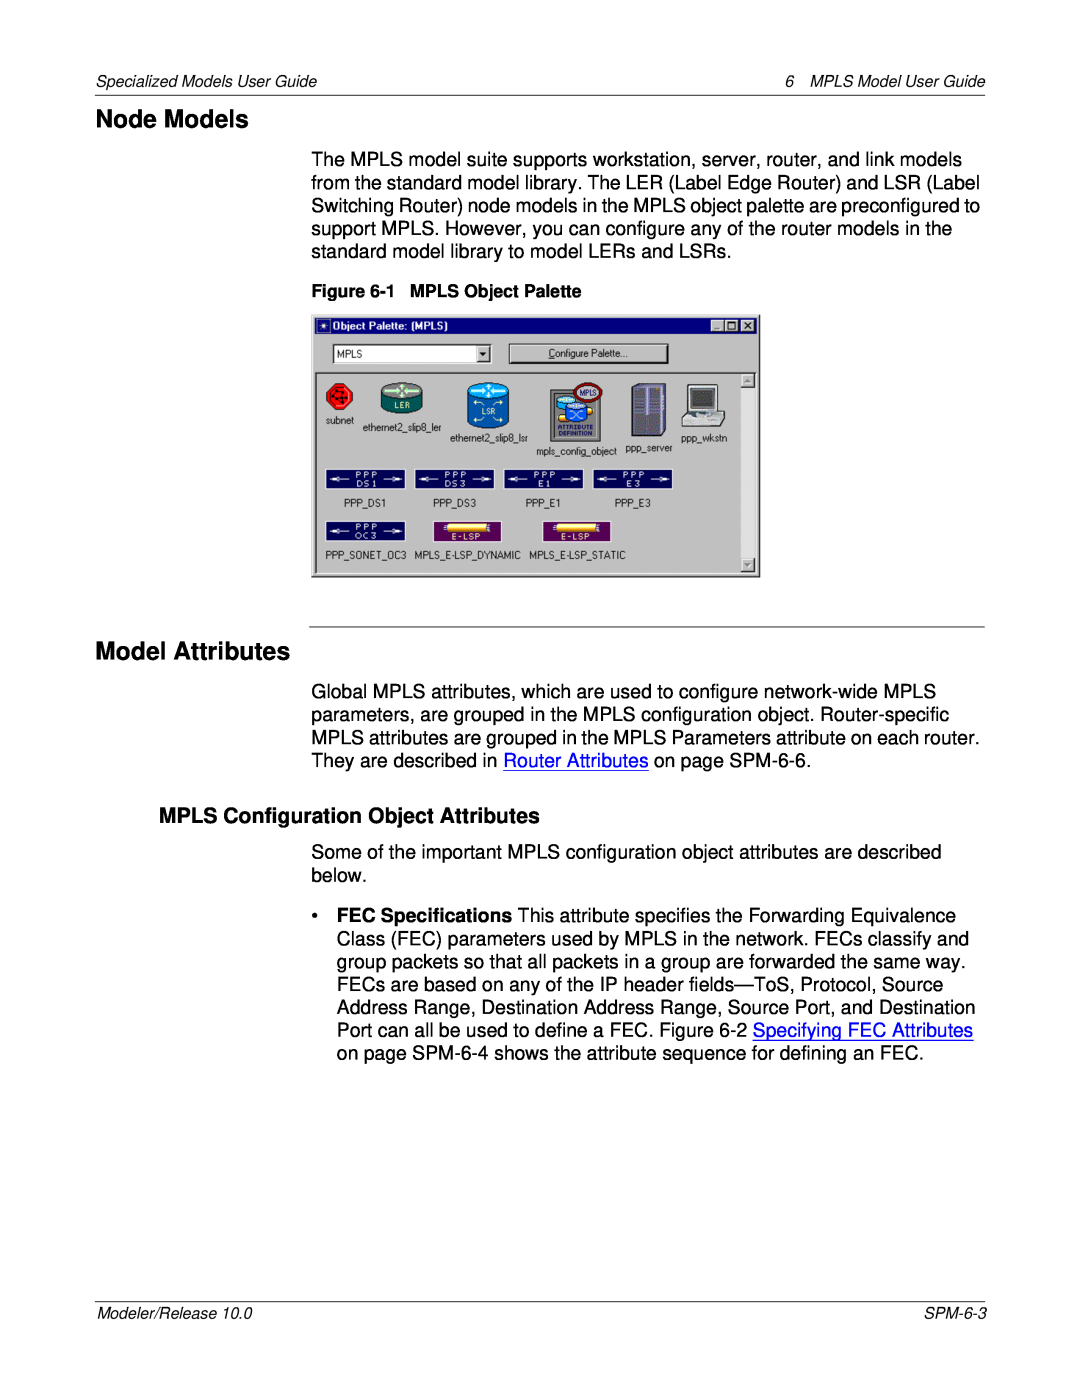 IBM 6 MPLS manual Node Models, Model Attributes, MPLS Configuration Object Attributes 